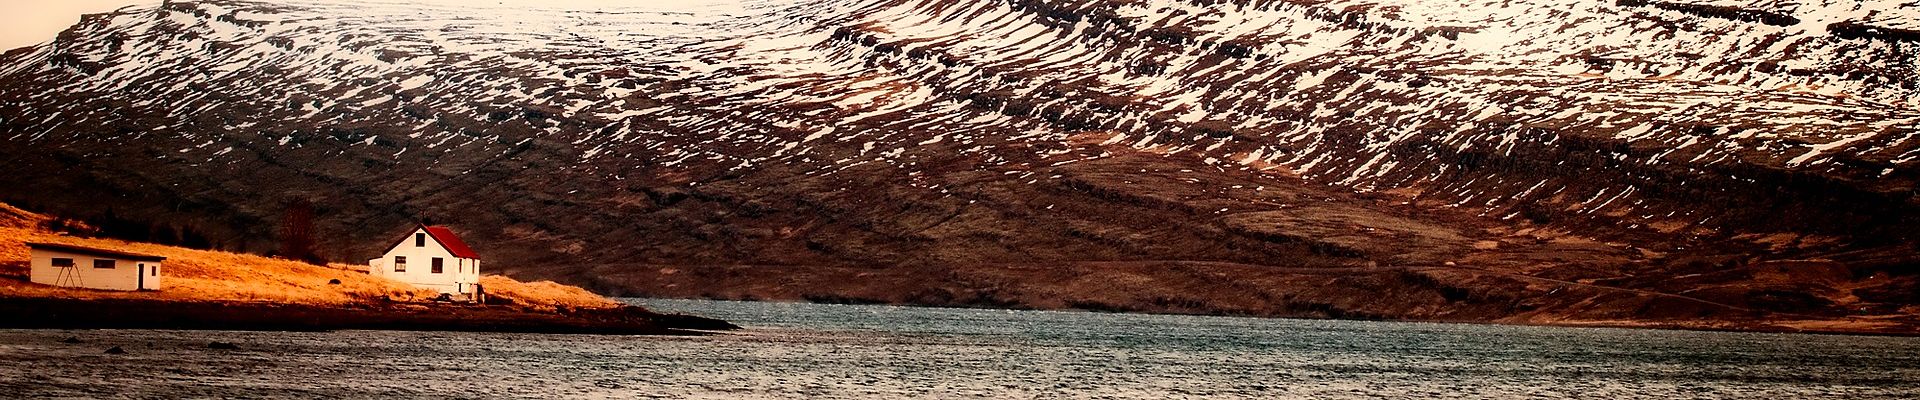 le tourisme eco responsable en Islande